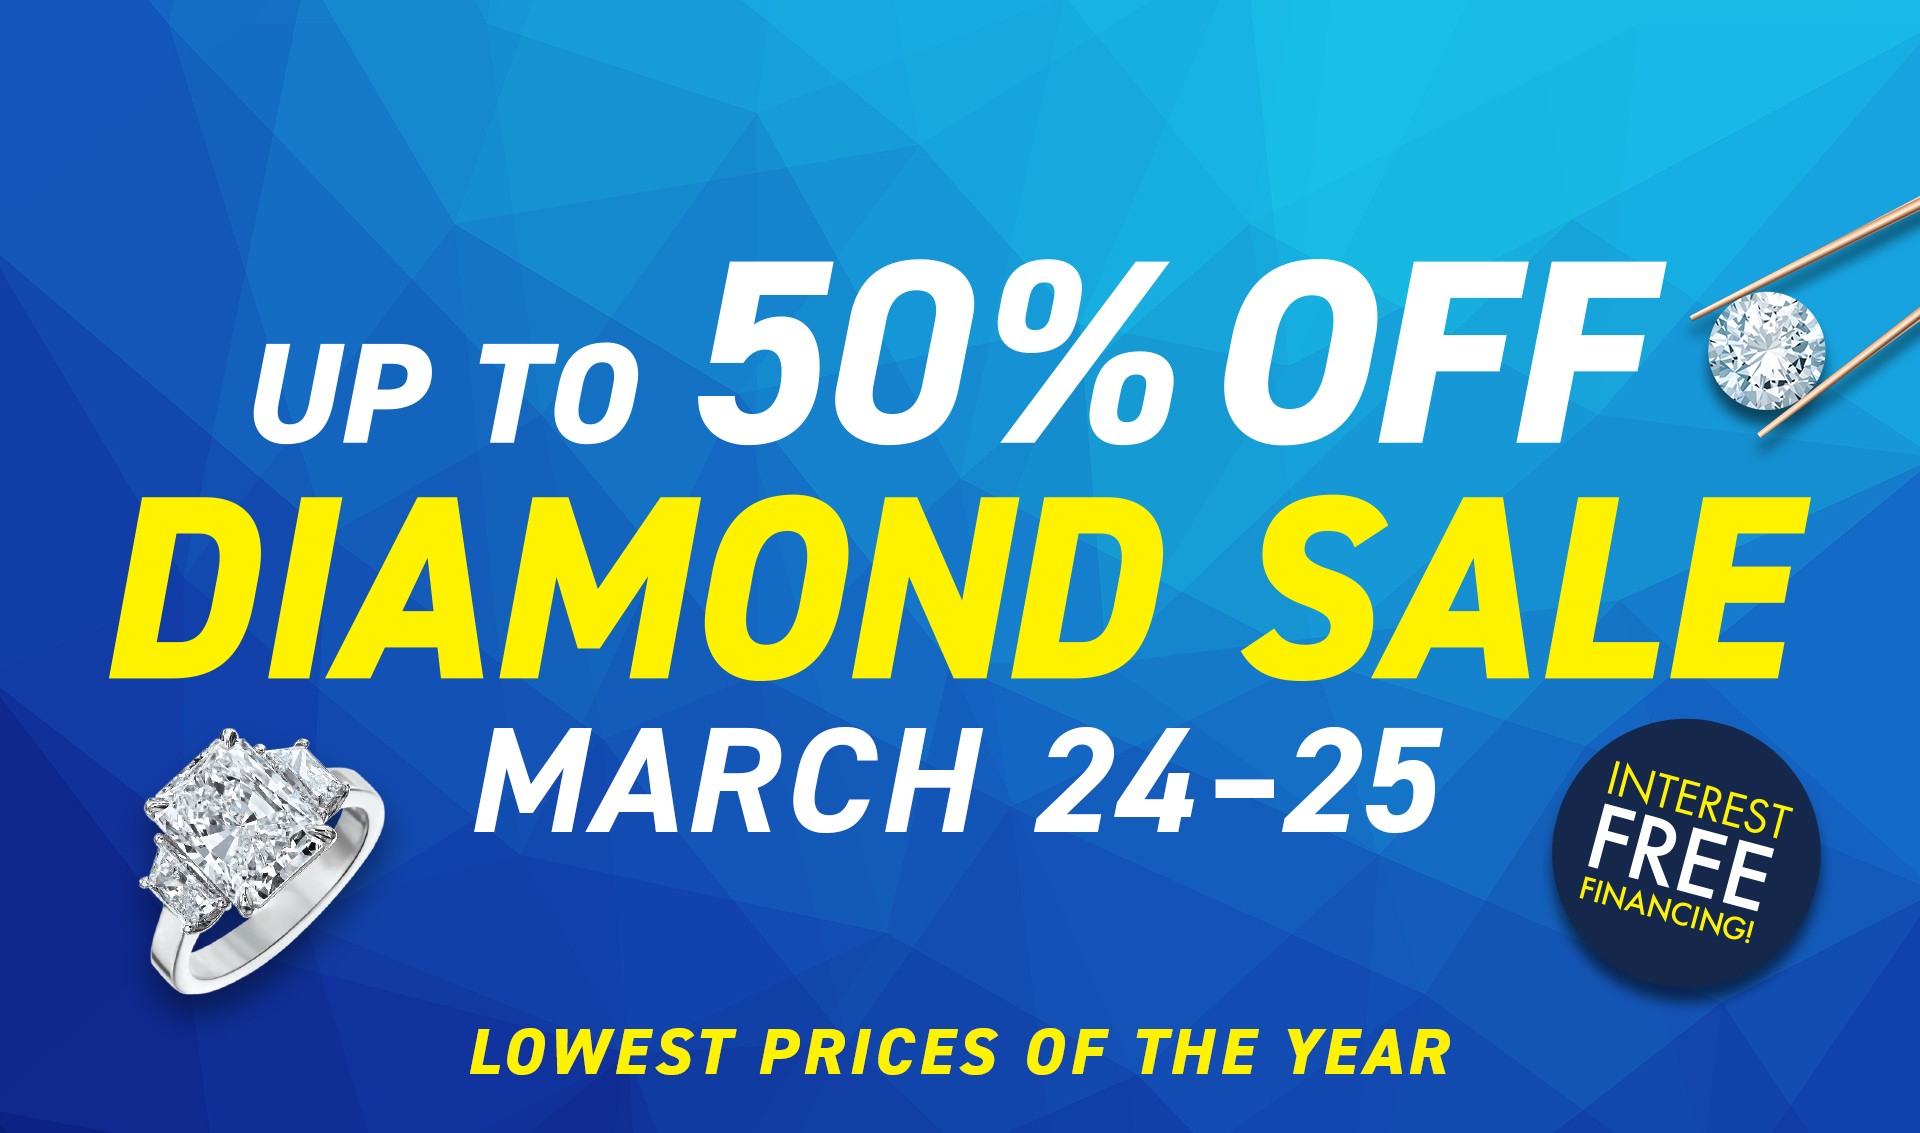 Diamond Sale March 24-25